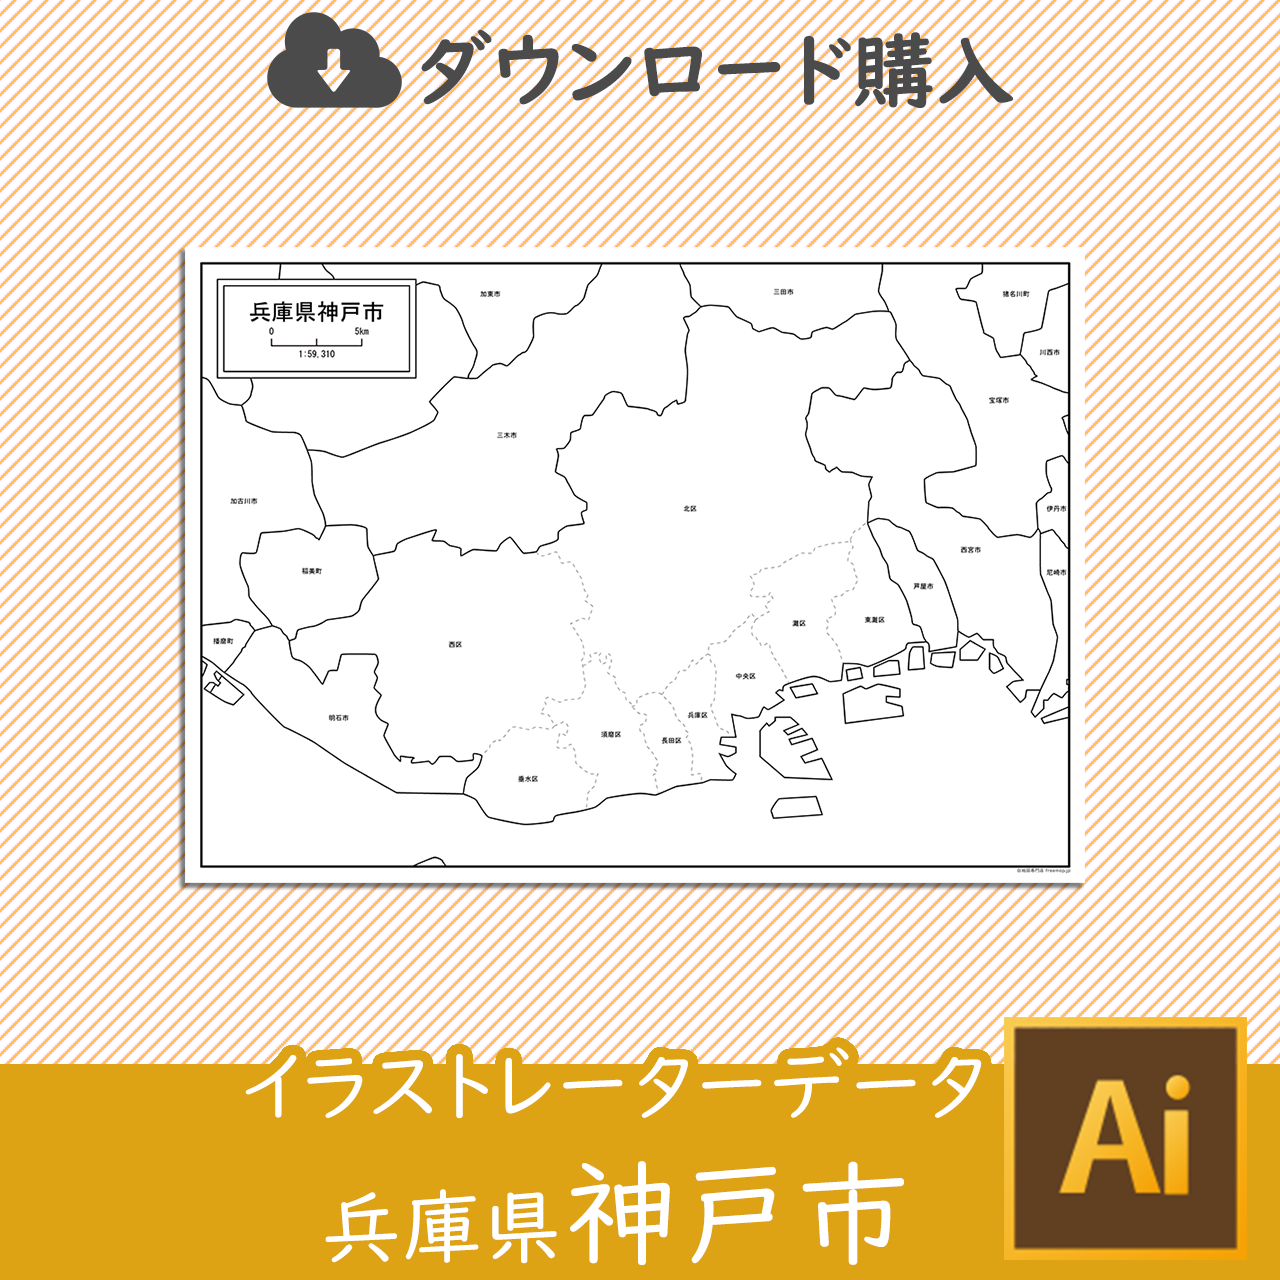 兵庫県神戸市のaiデータのサムネイル画像